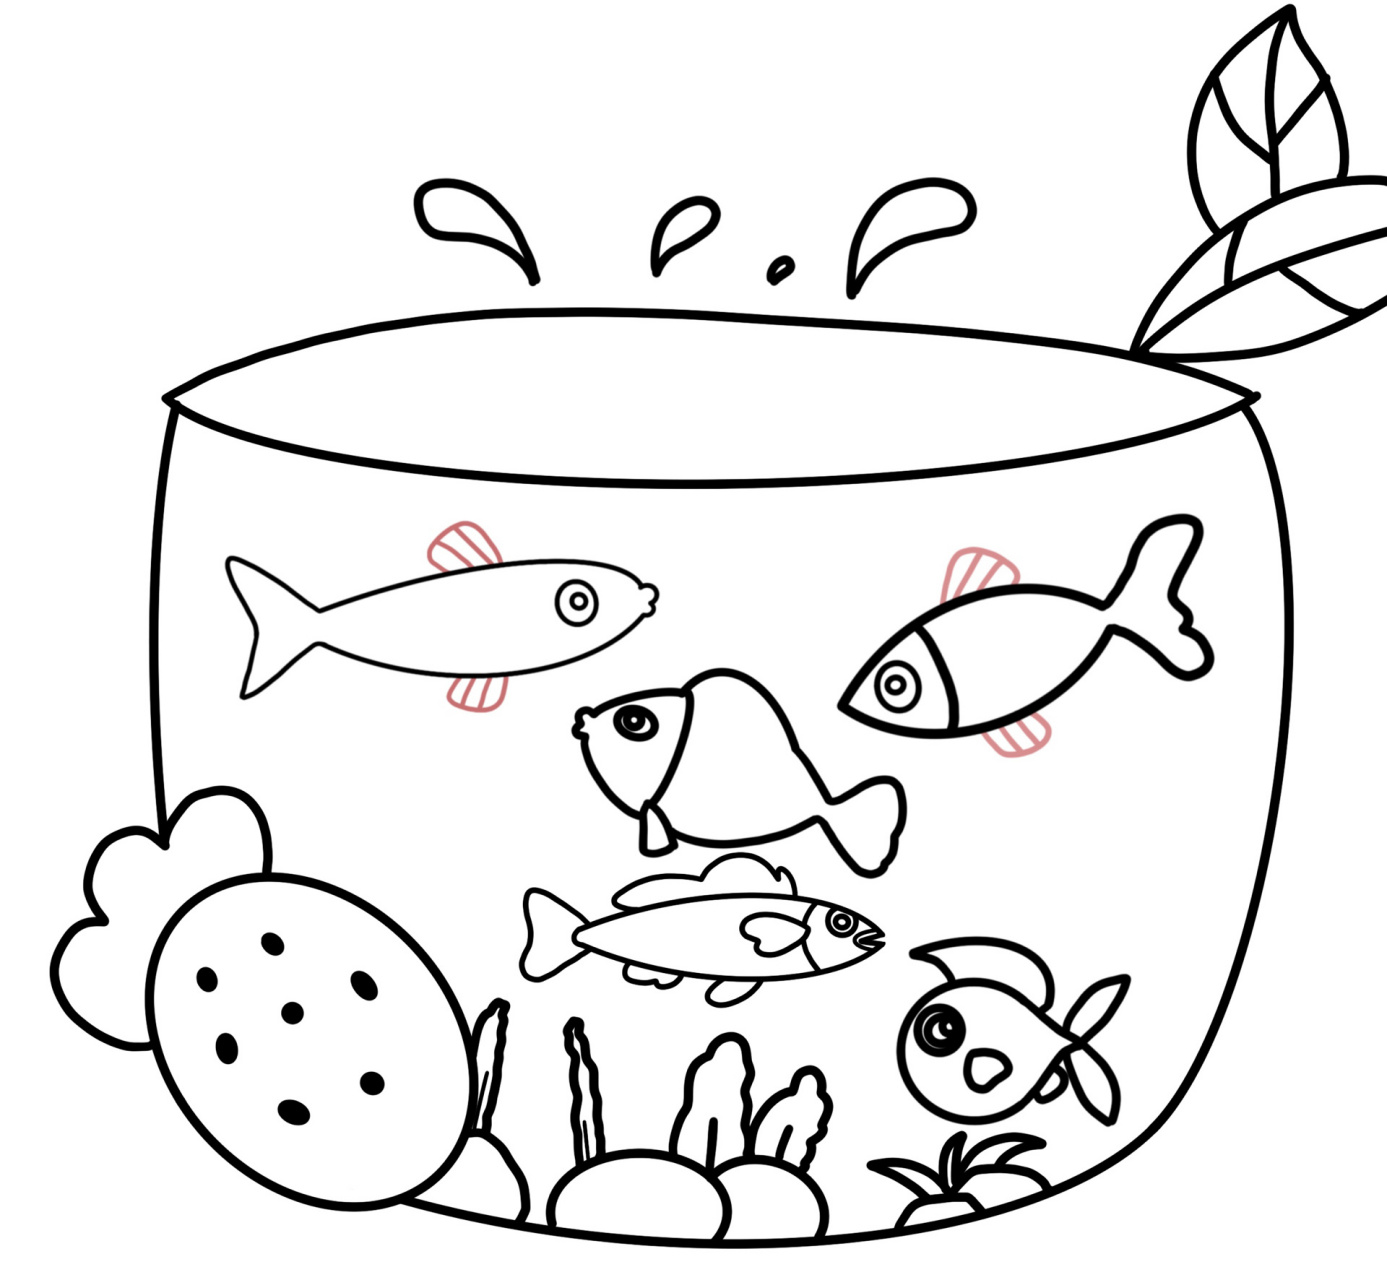 鱼缸图片简笔画儿童图片